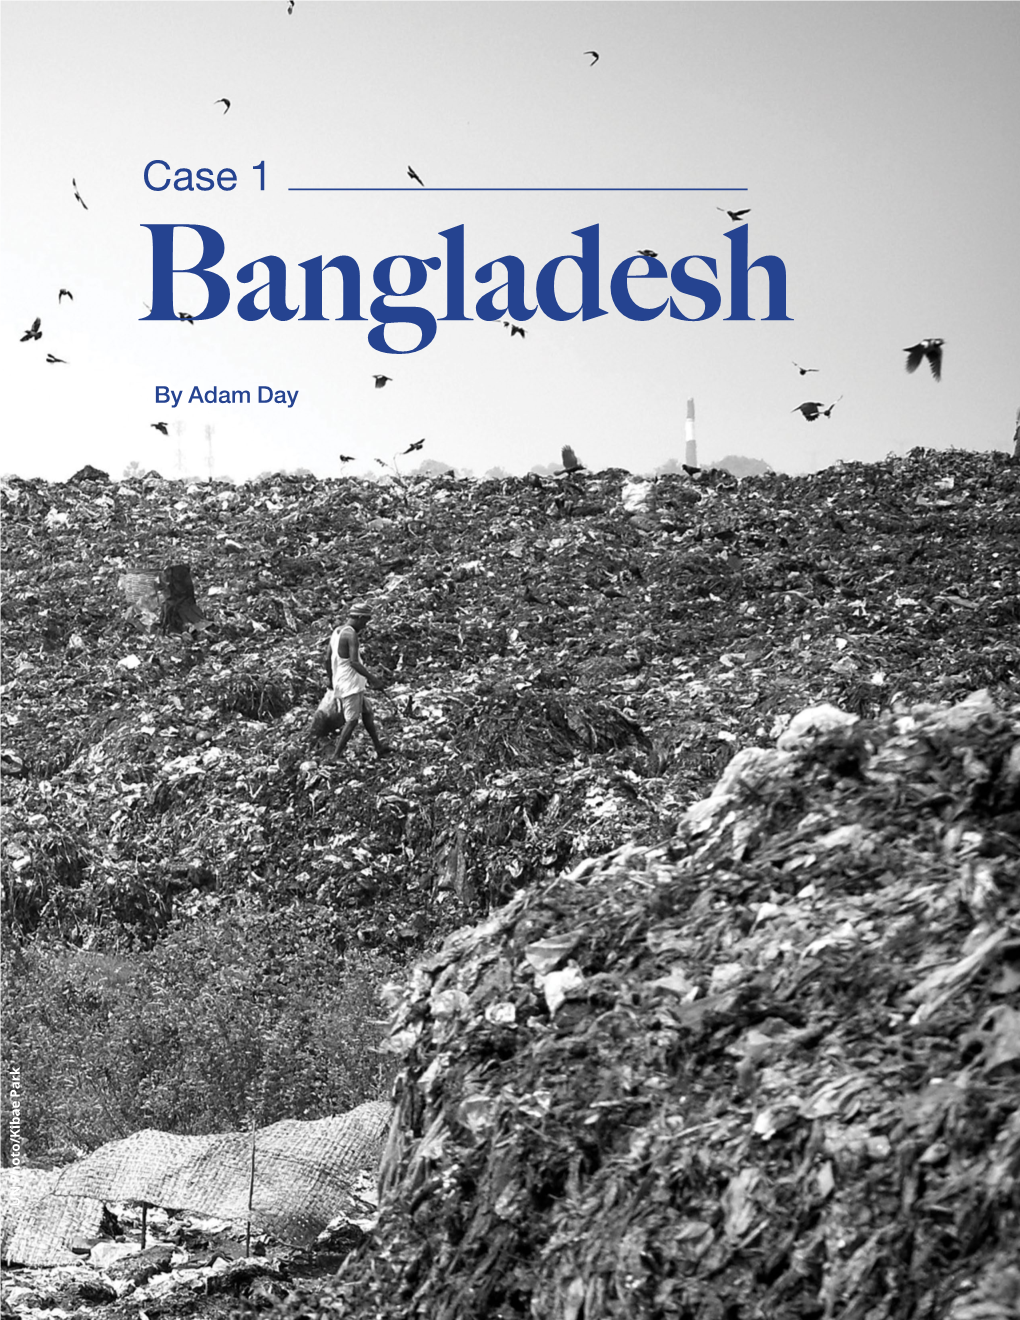 Case 1 Bangladesh